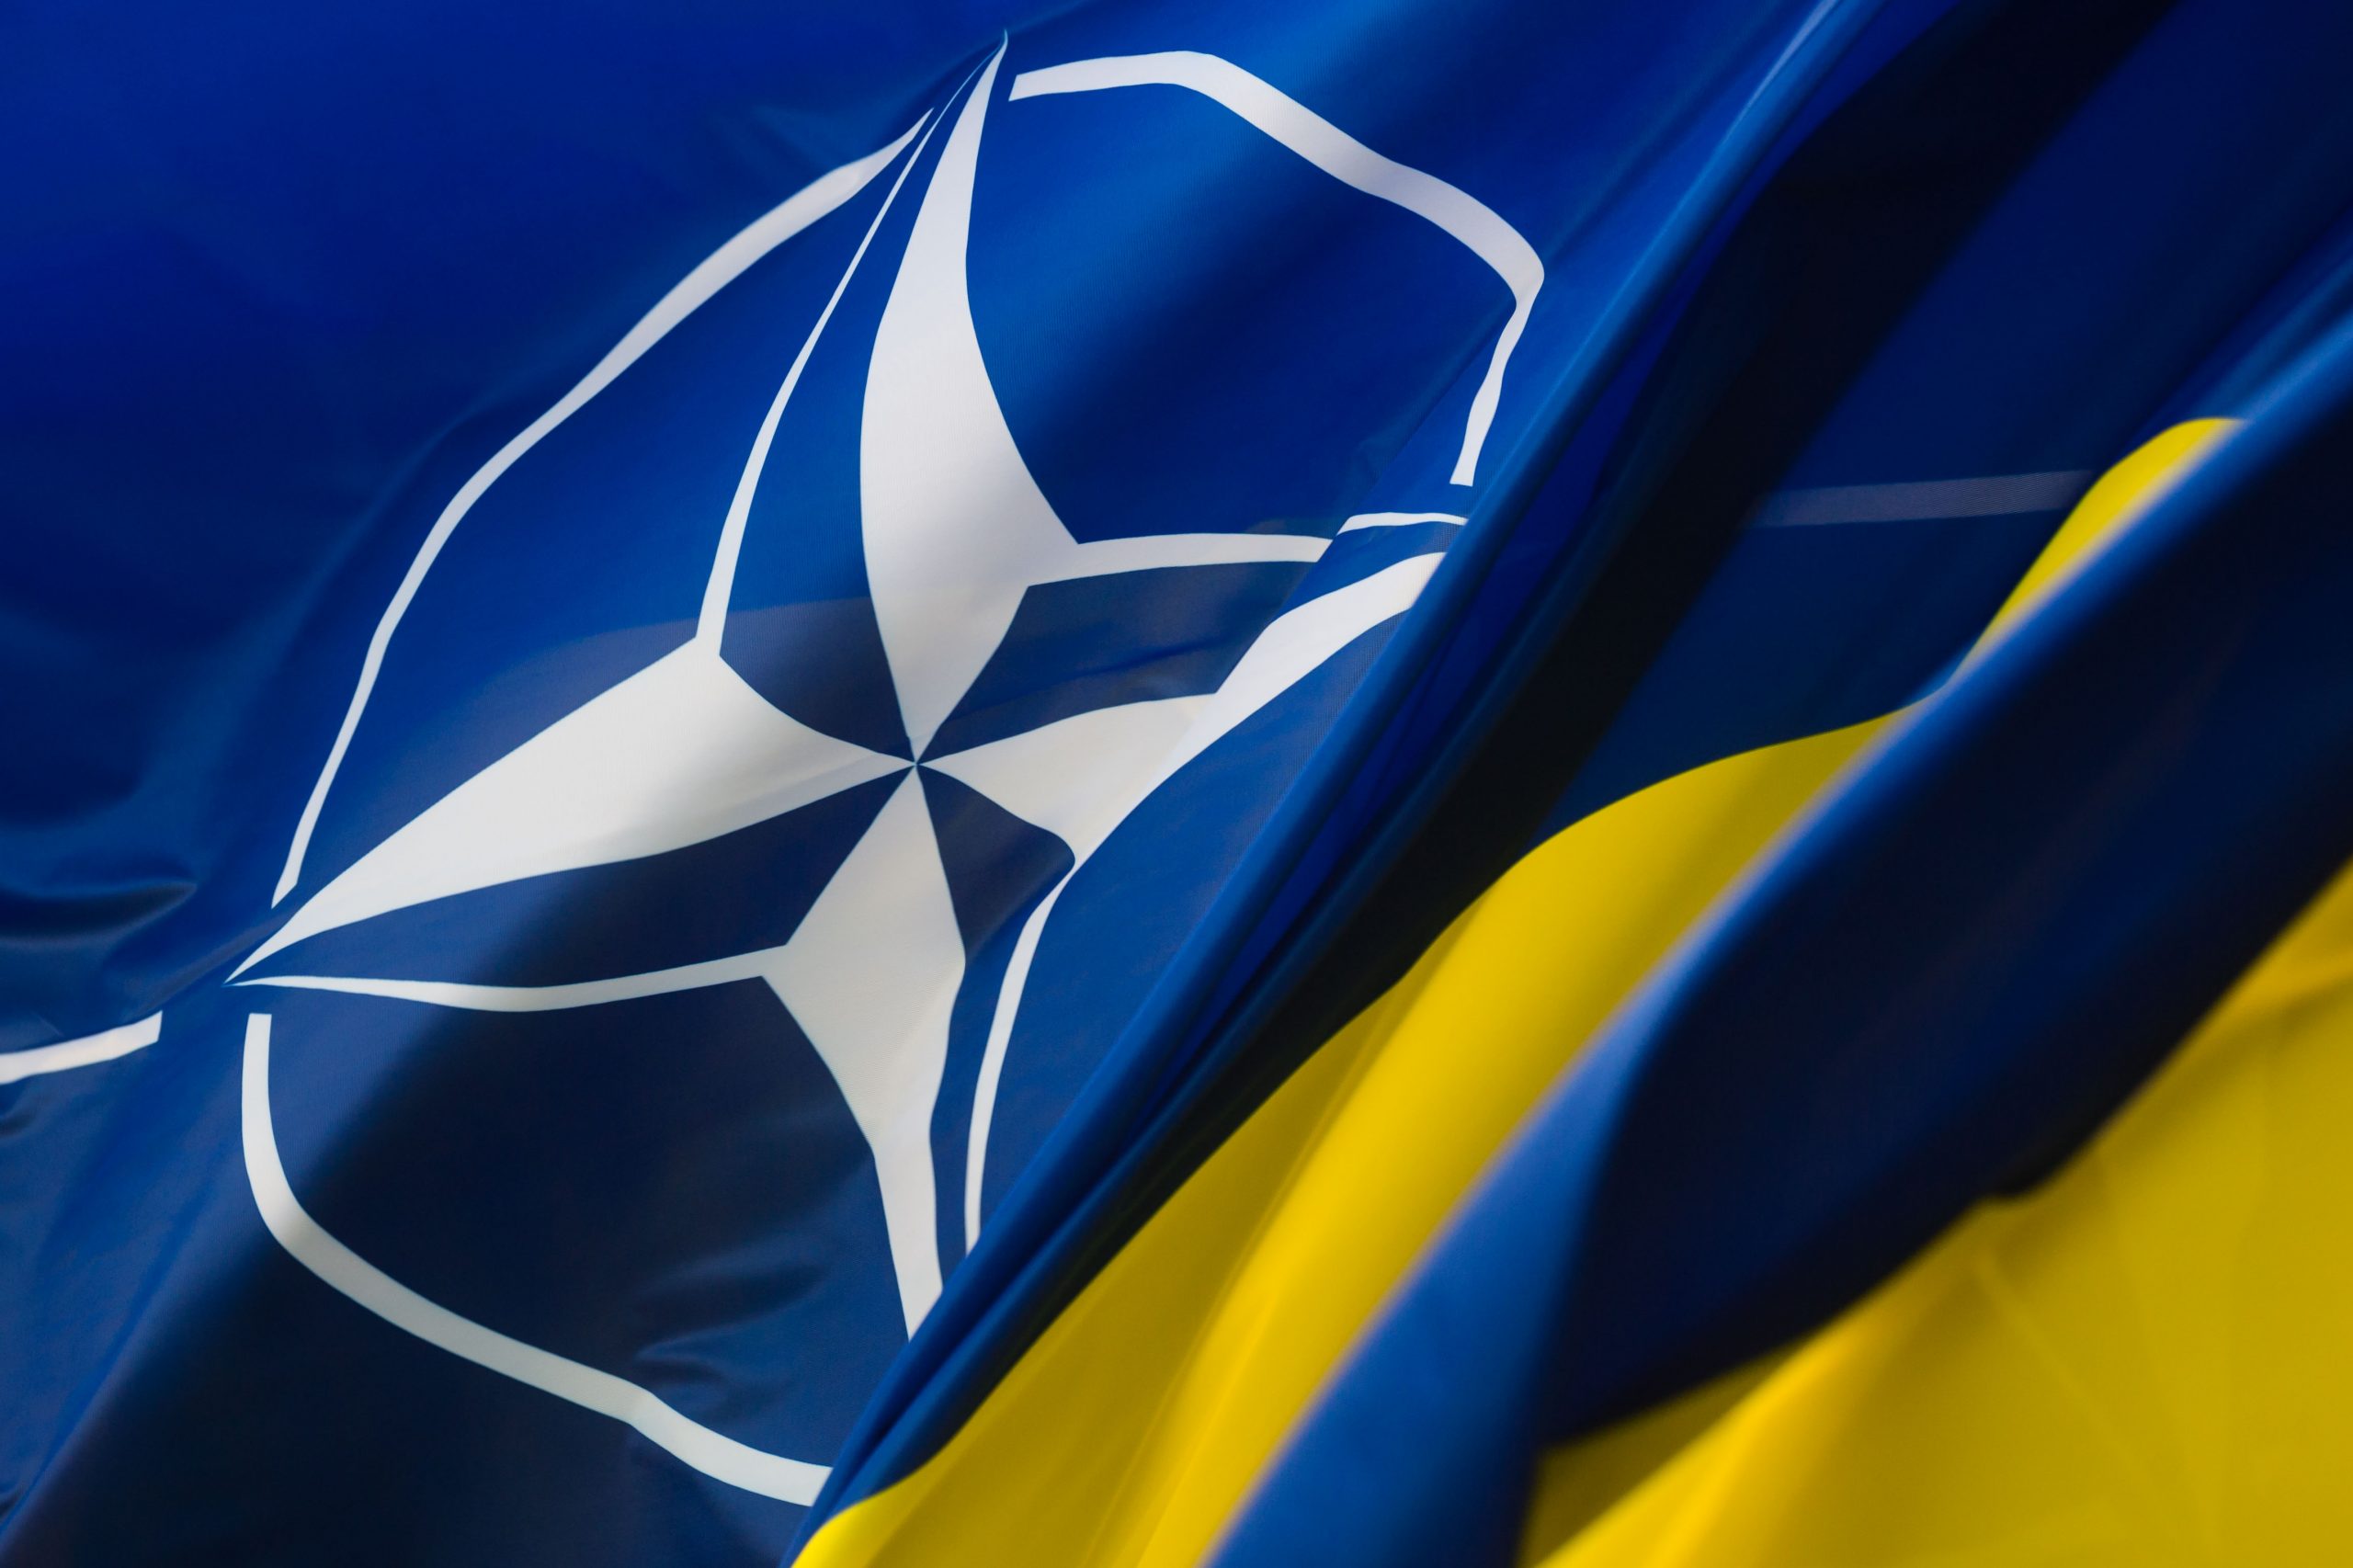 Ukraina i NATO podpisali zaktualizowane memorandum w sprawie prac nad projektami technologicznymi